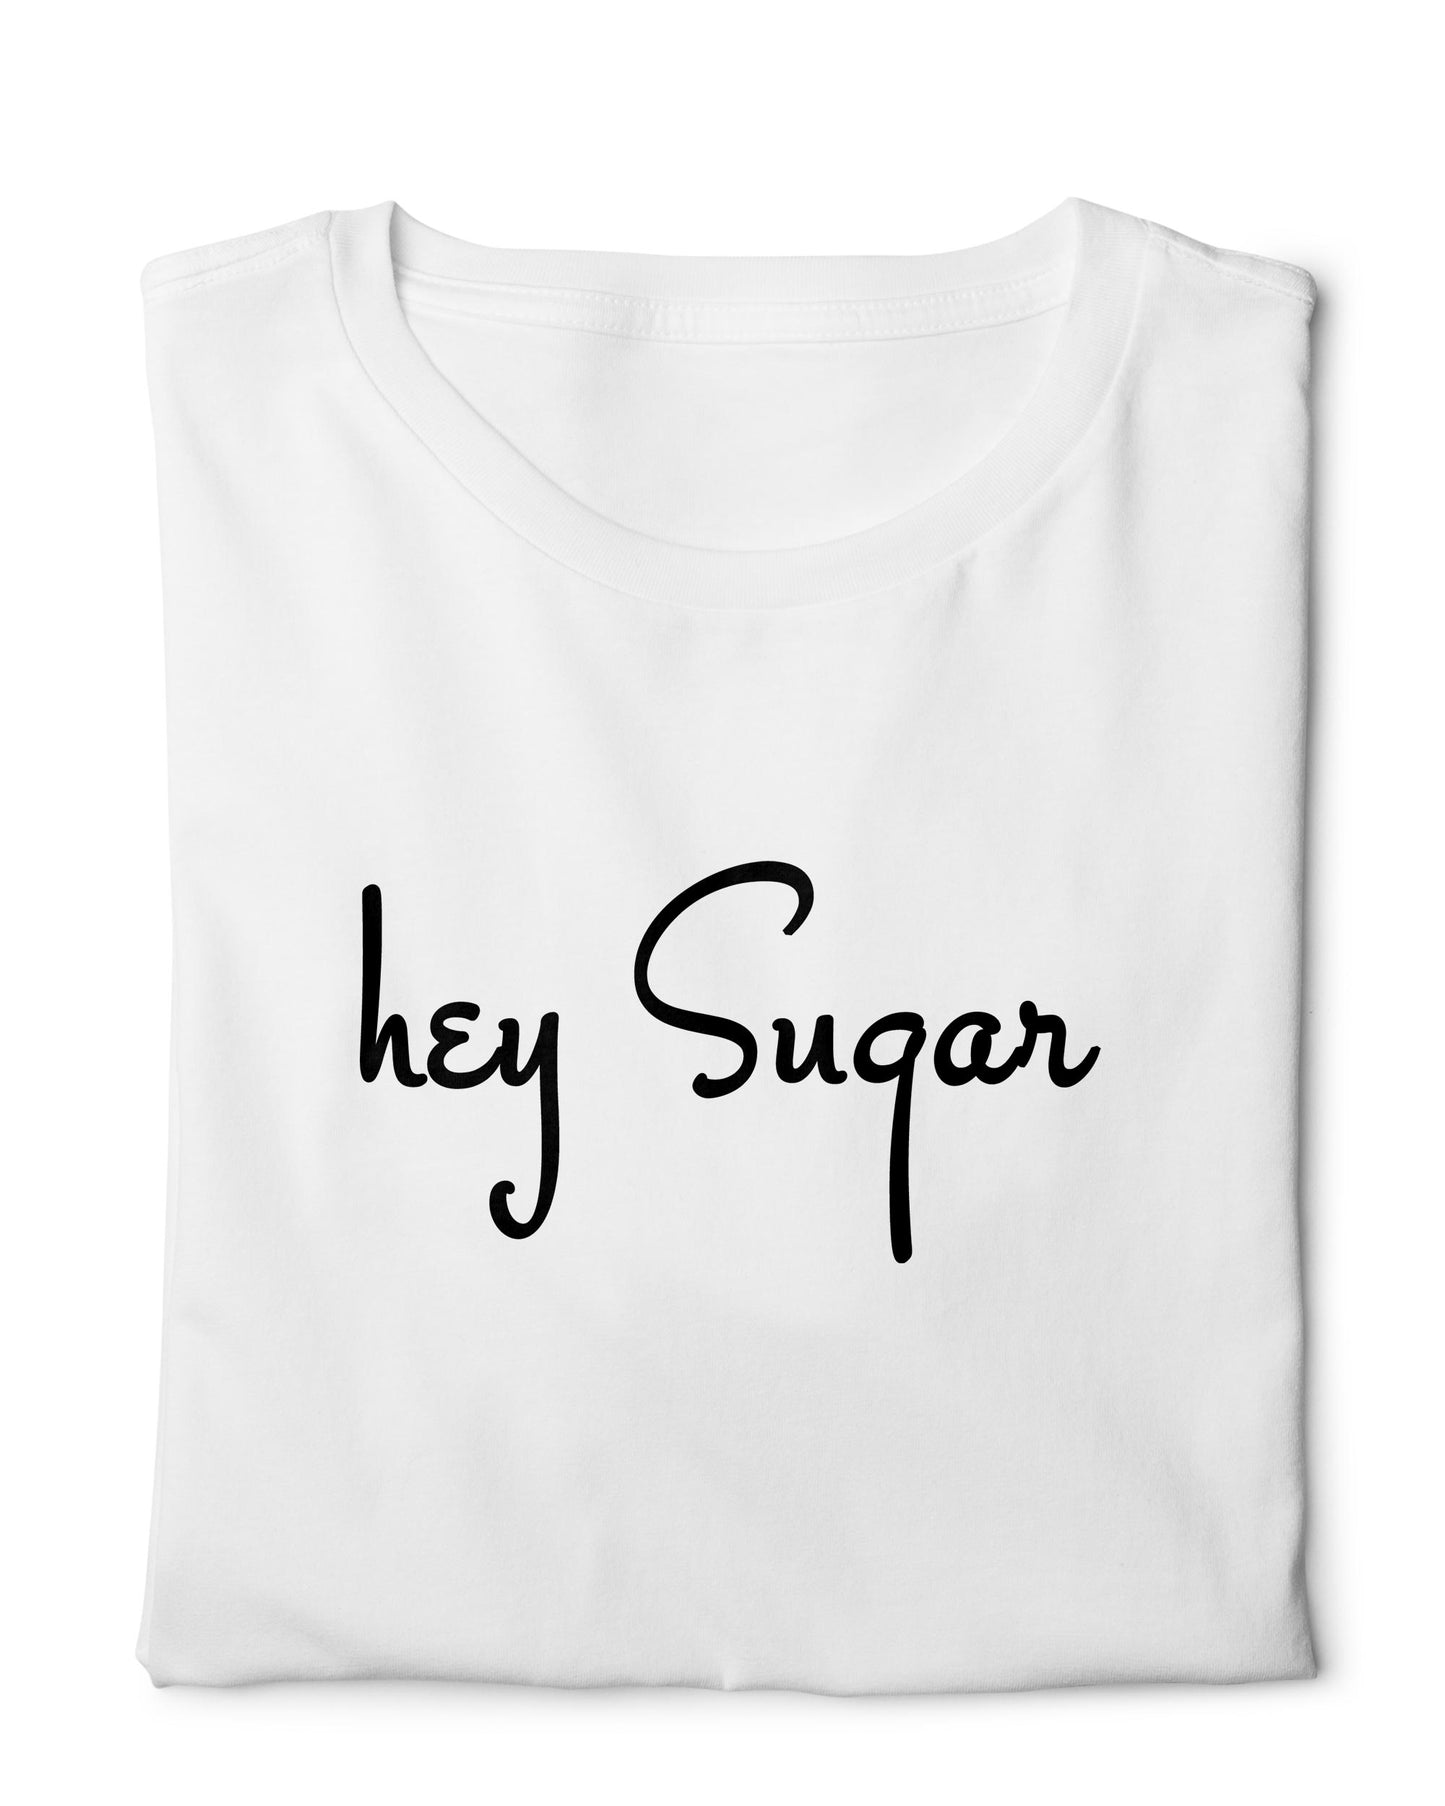 Hey Sugar - Digital Graphics Basic T-shirt White - Ravin 